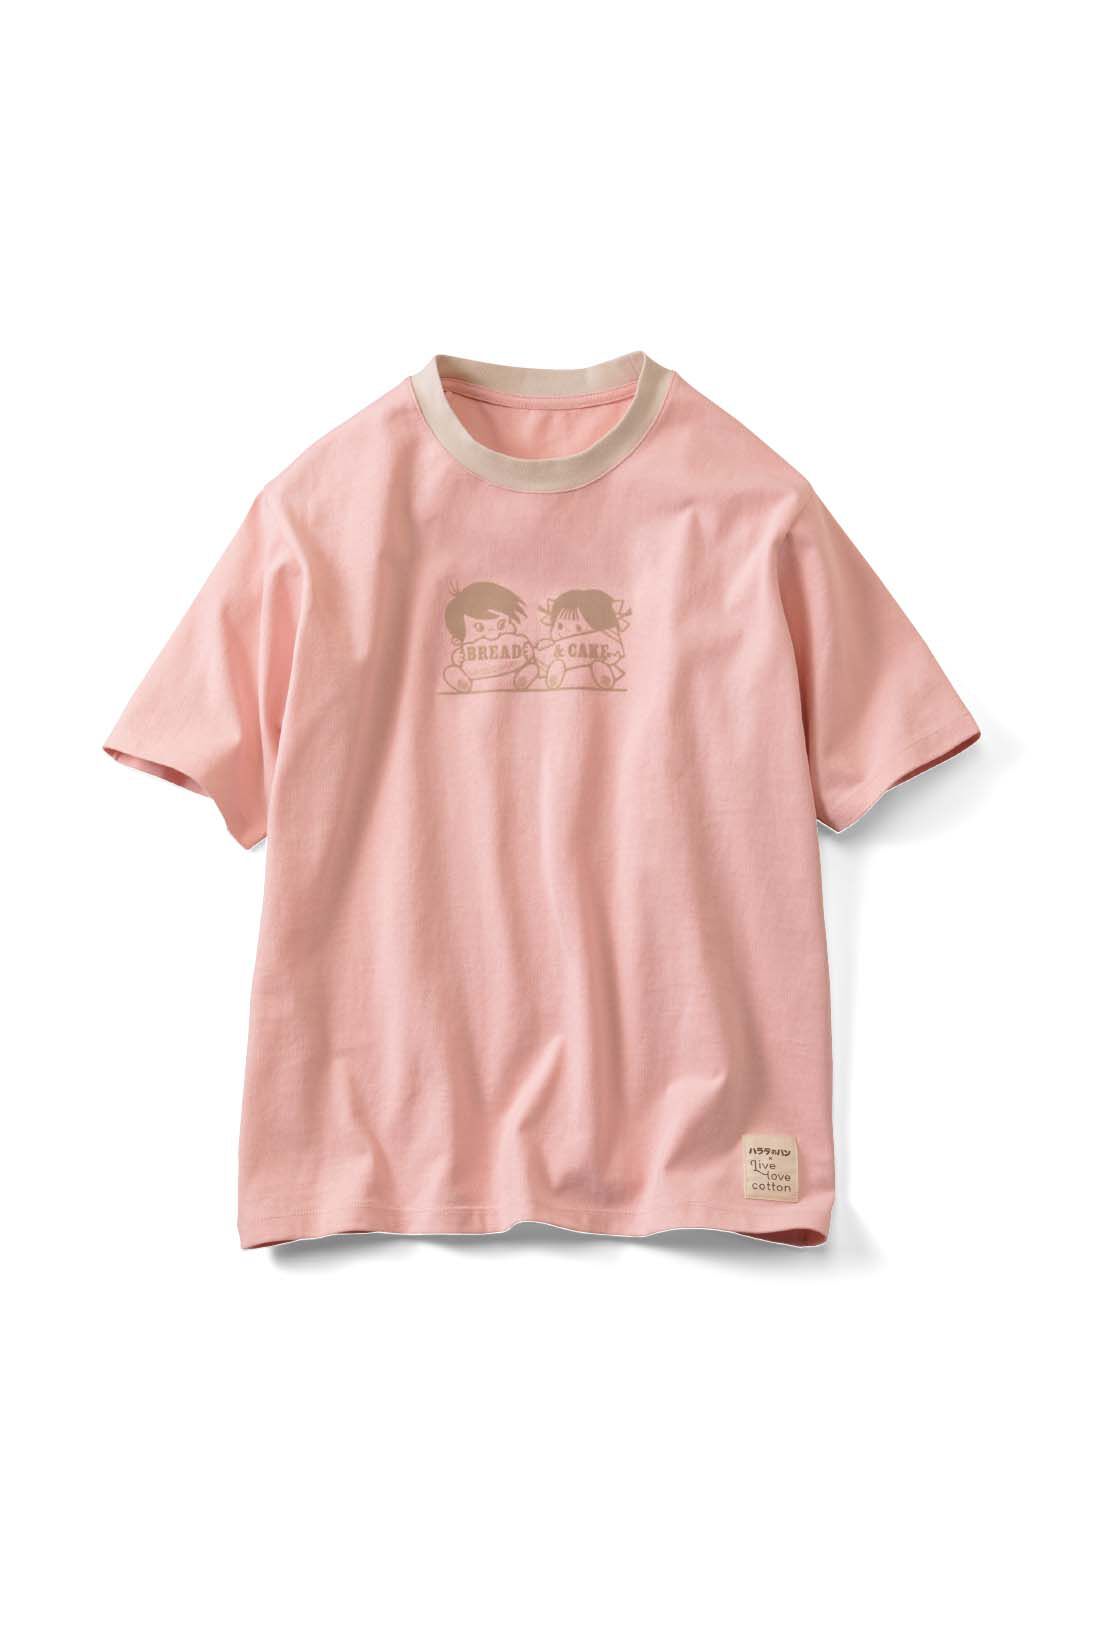 Real Stock|Live love cottonプロジェクト リブ イン コンフォート神戸のベーカリーハラダのパンさんとつくったオーガニックコットンのレトロかわいいTシャツ〈ベビーピンク〉